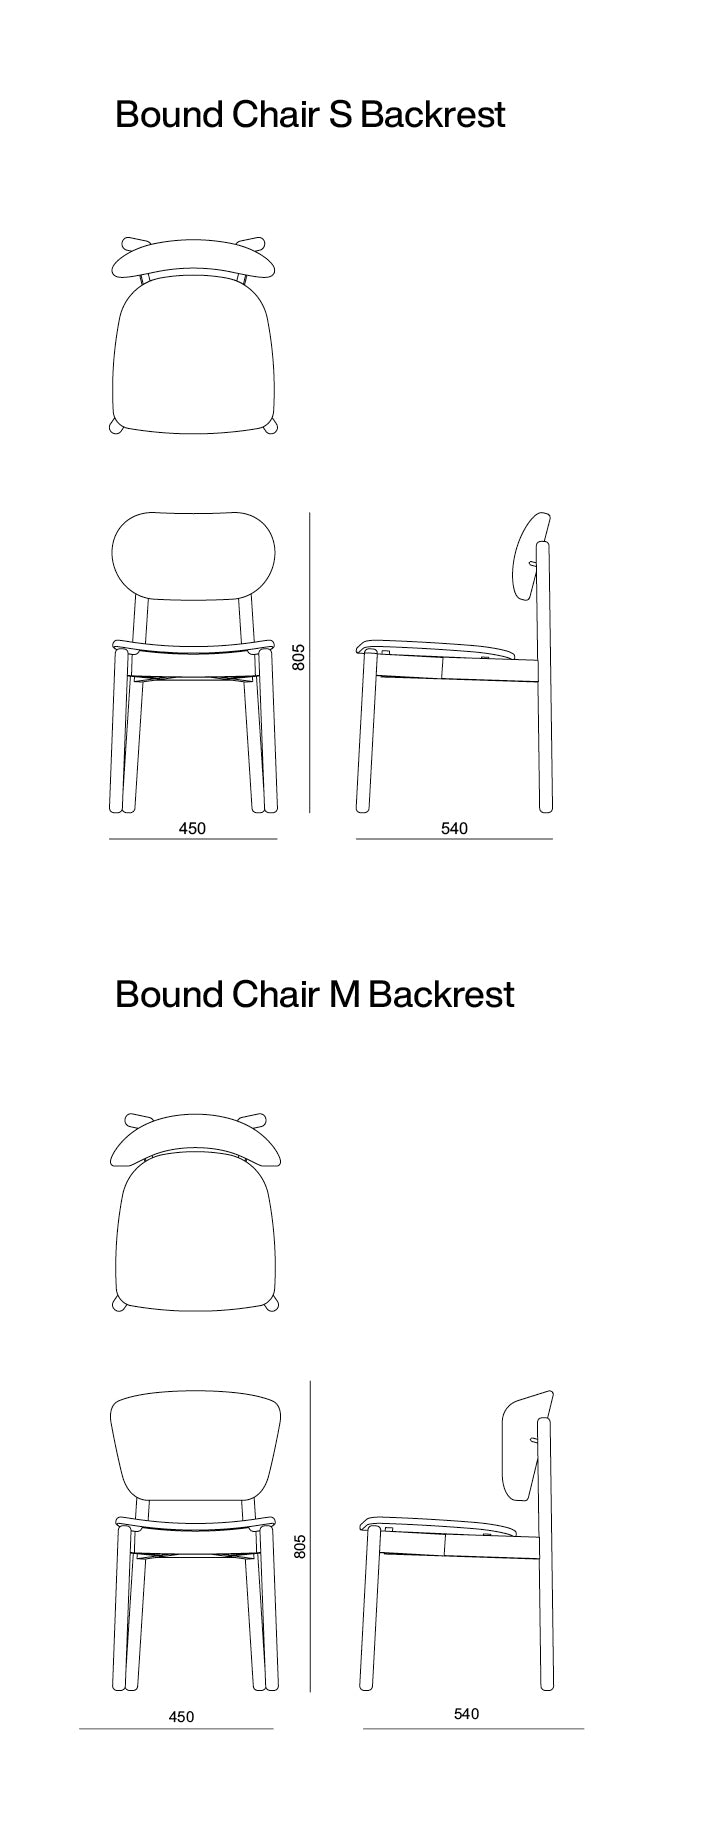 Bound Chair